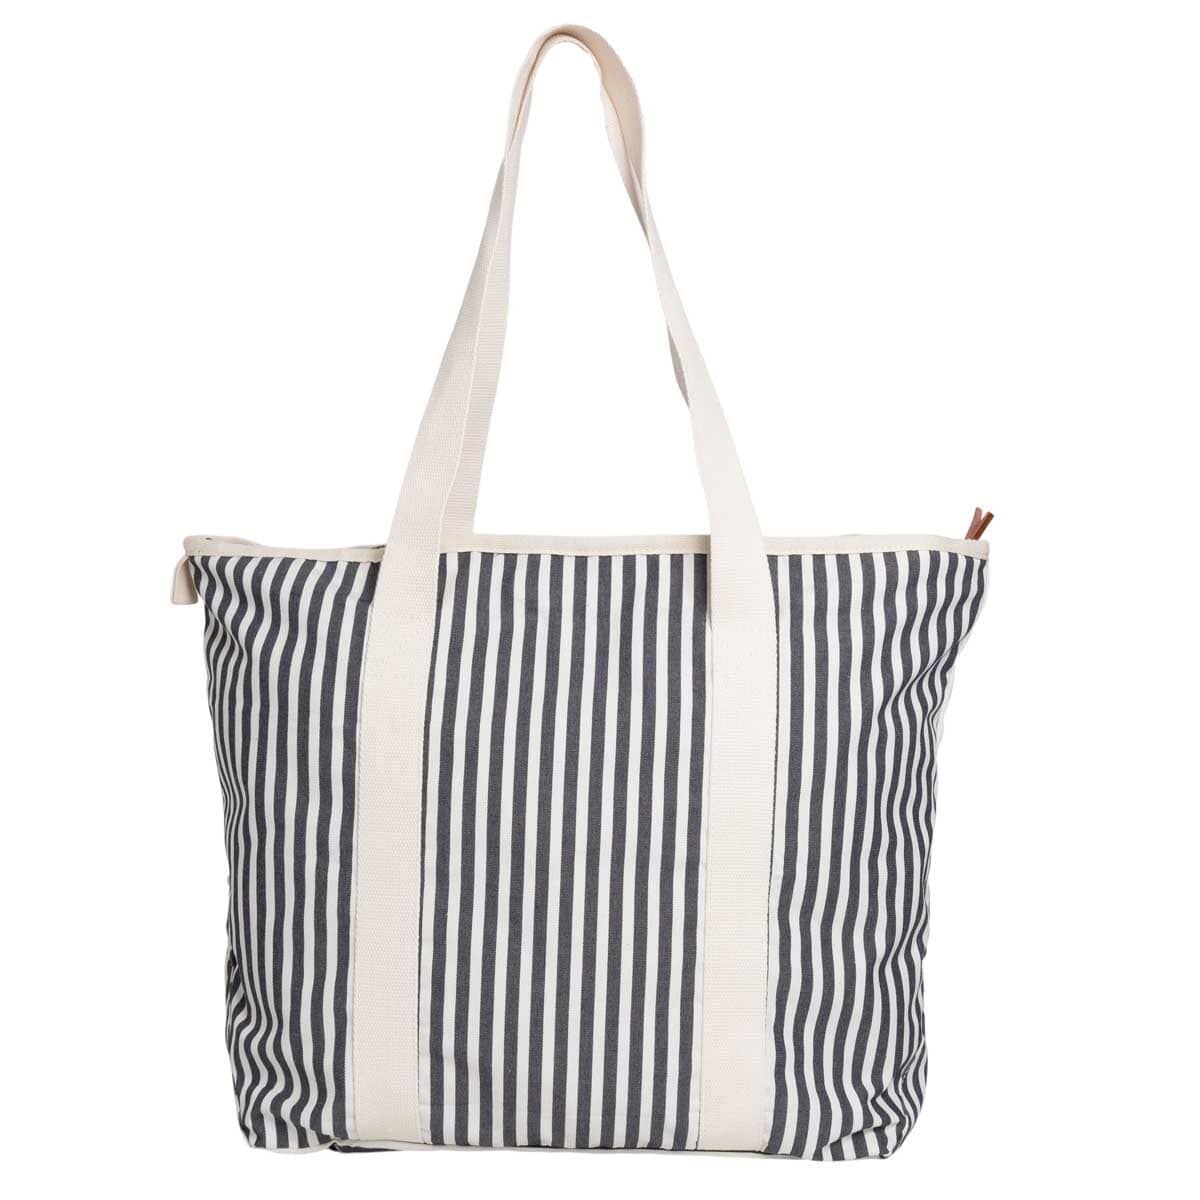 The Beach Bag - Lauren's Navy Stripe